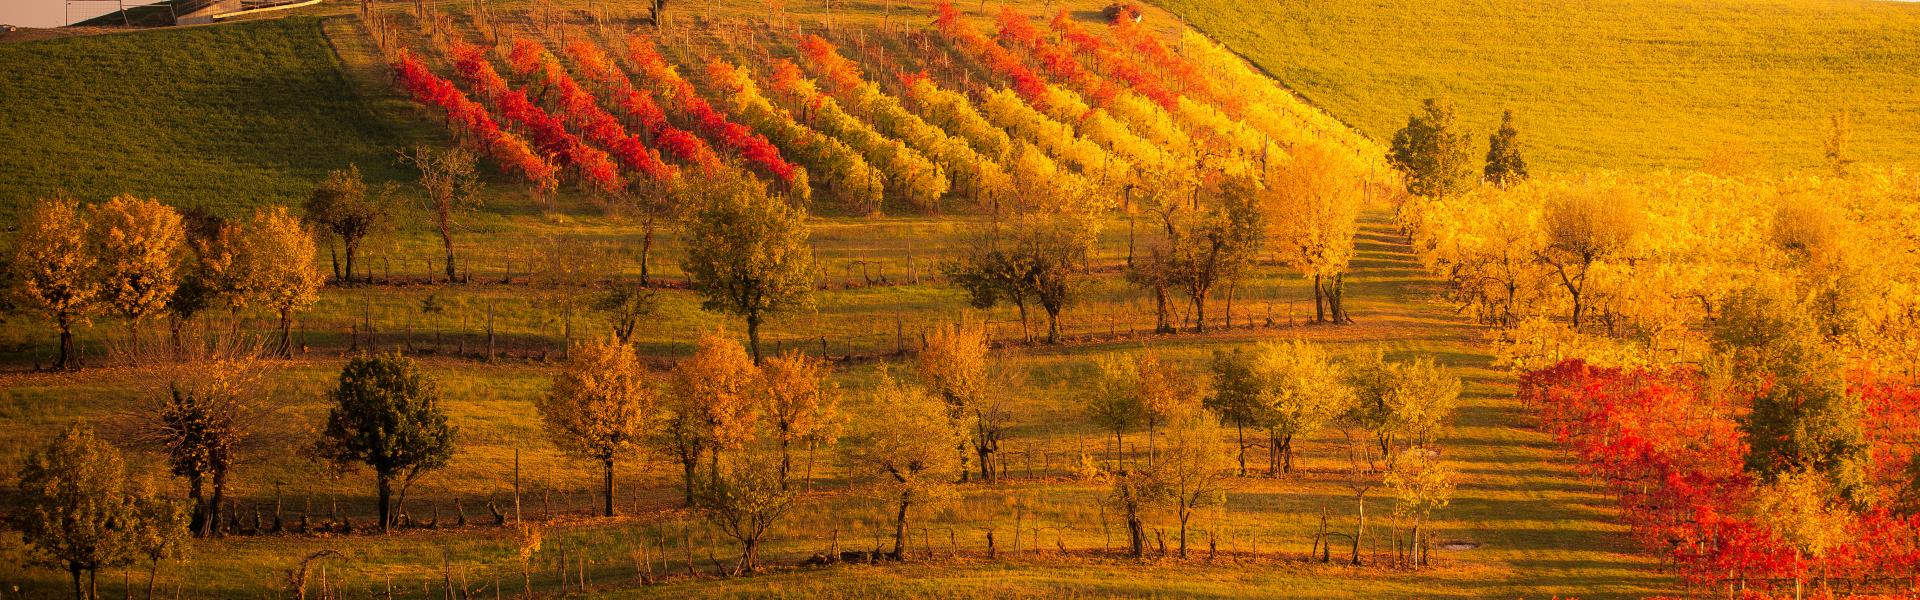 Emilia-Romagna Nature